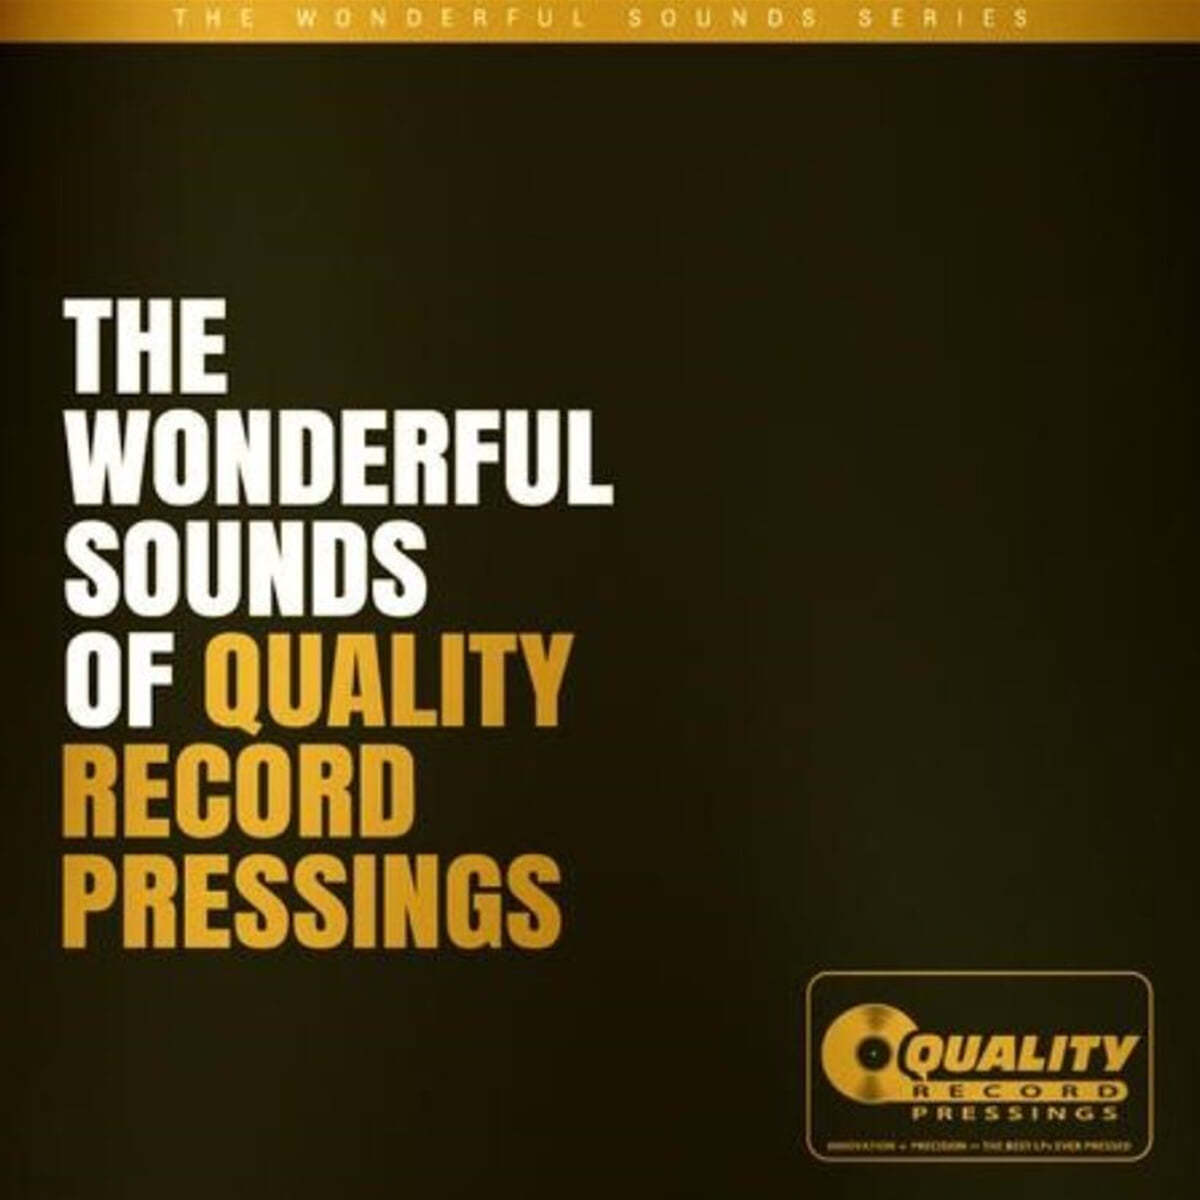 블루스, 재즈, 클래식, R&B 및 여성 보컬 레코드 모음집 (The Wonderful Sounds Of Quality Record Pressings) [3LP]